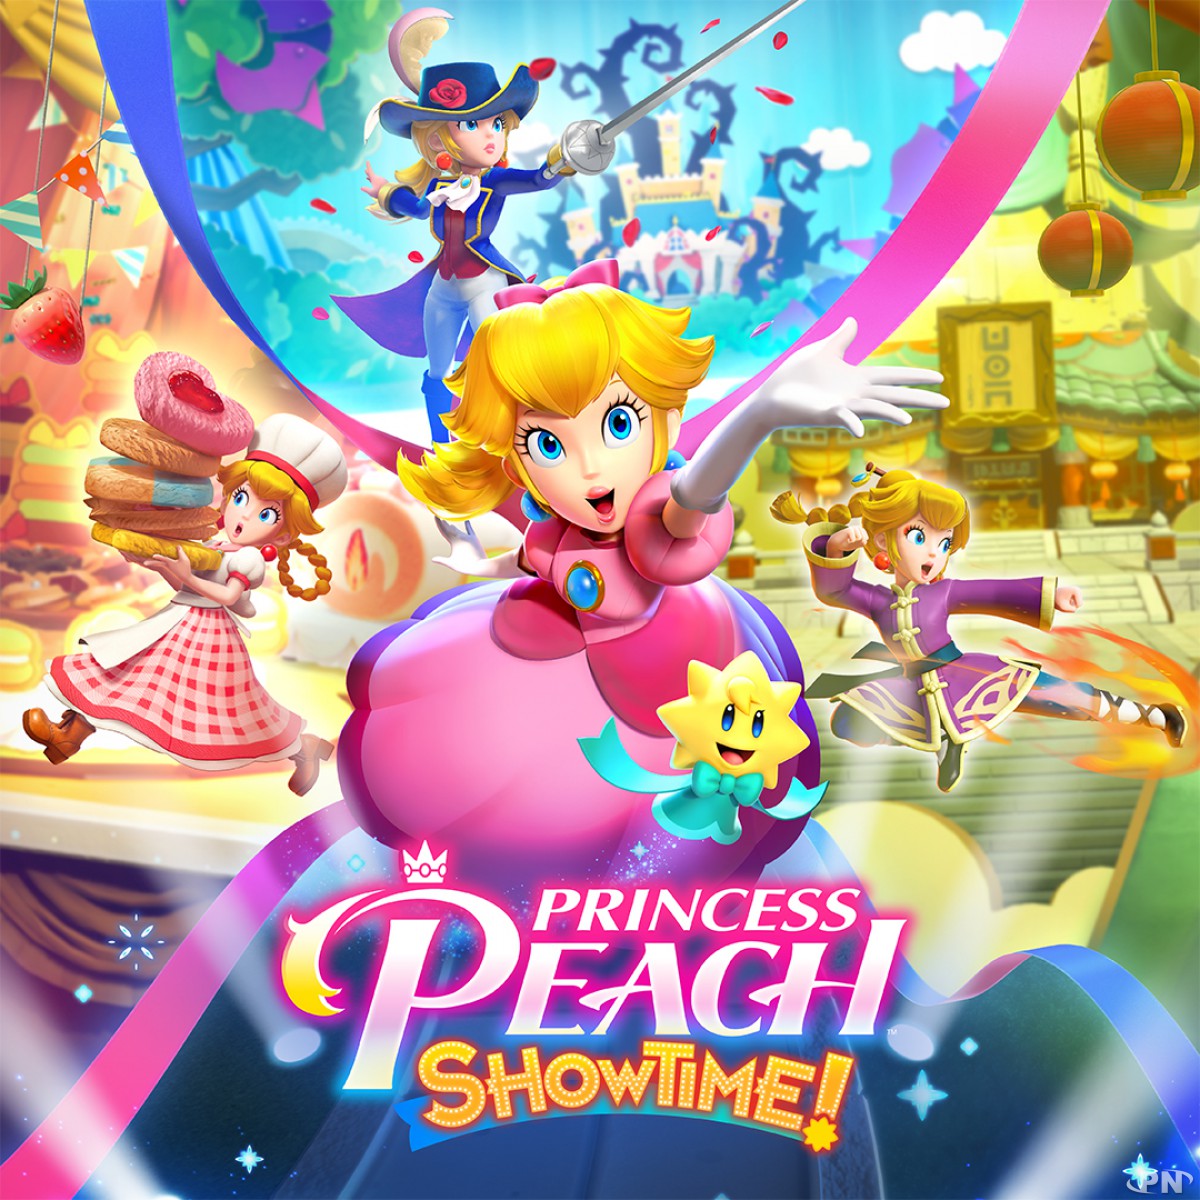 Princess Peach: Showtime sort ce vendredi 22 mars 2023 sur Nintendo Switch exclusivement